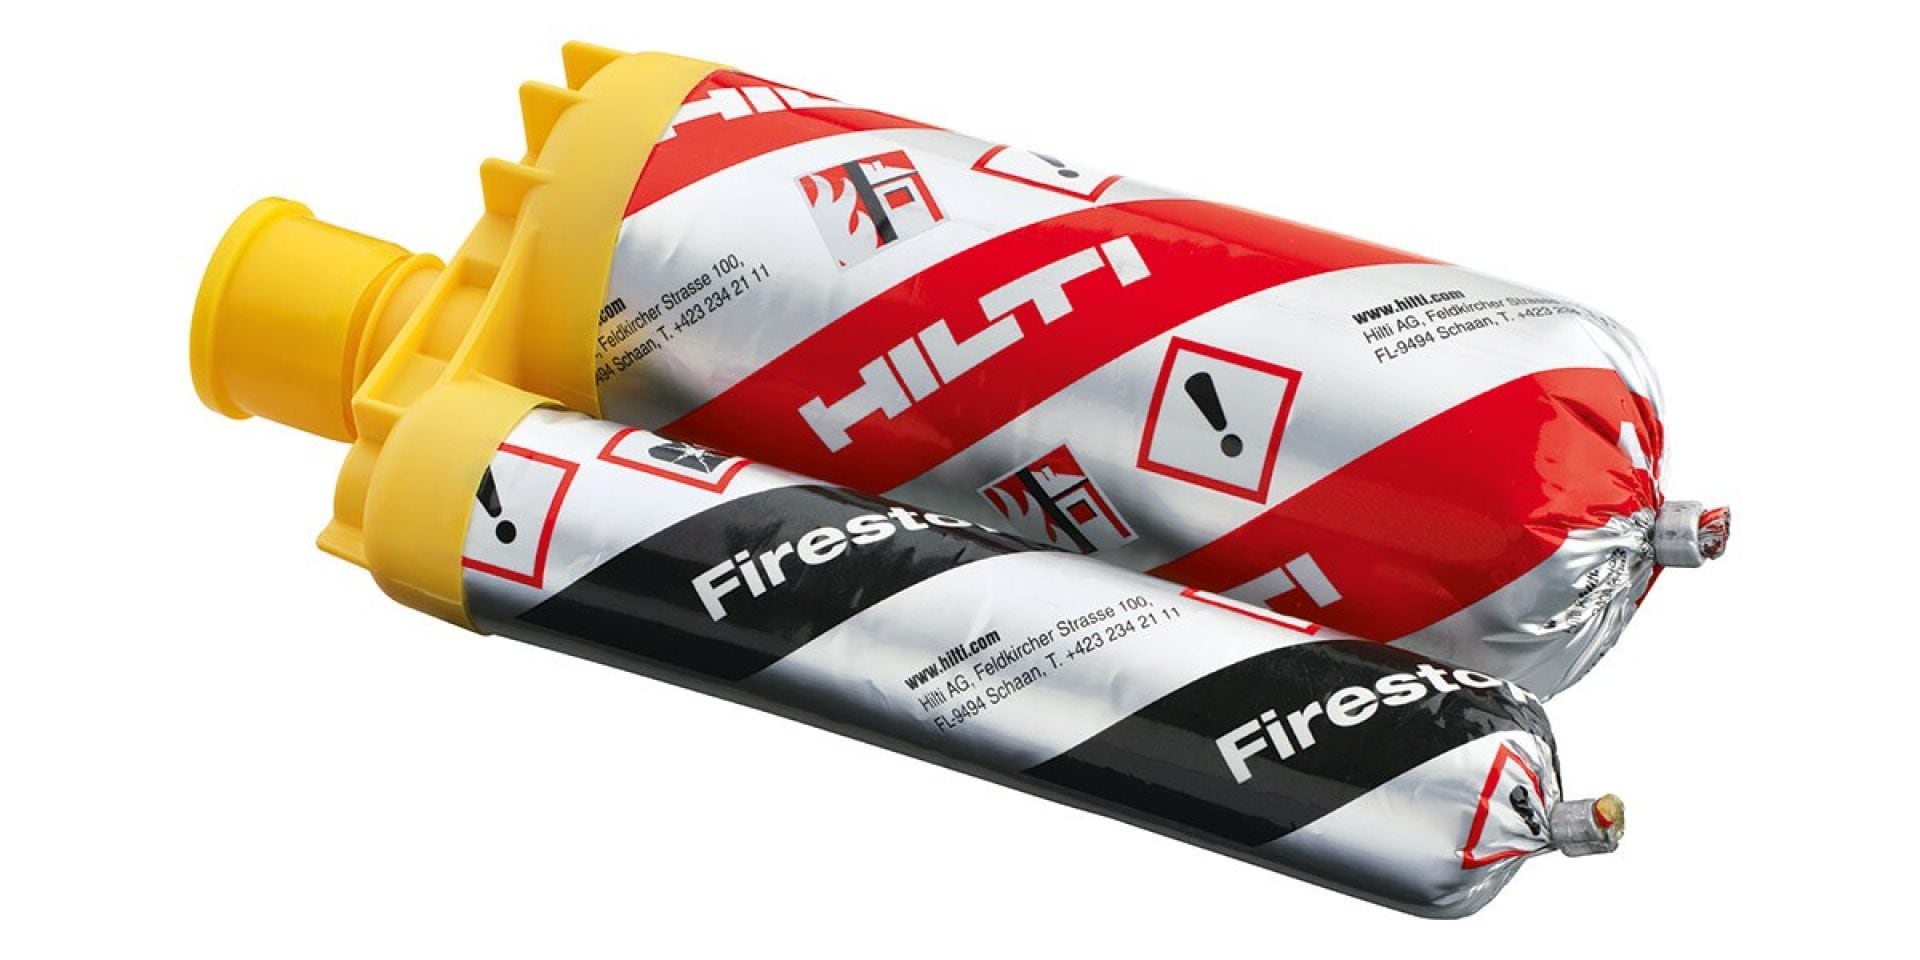 Hilti flexible firestop foam CP 660